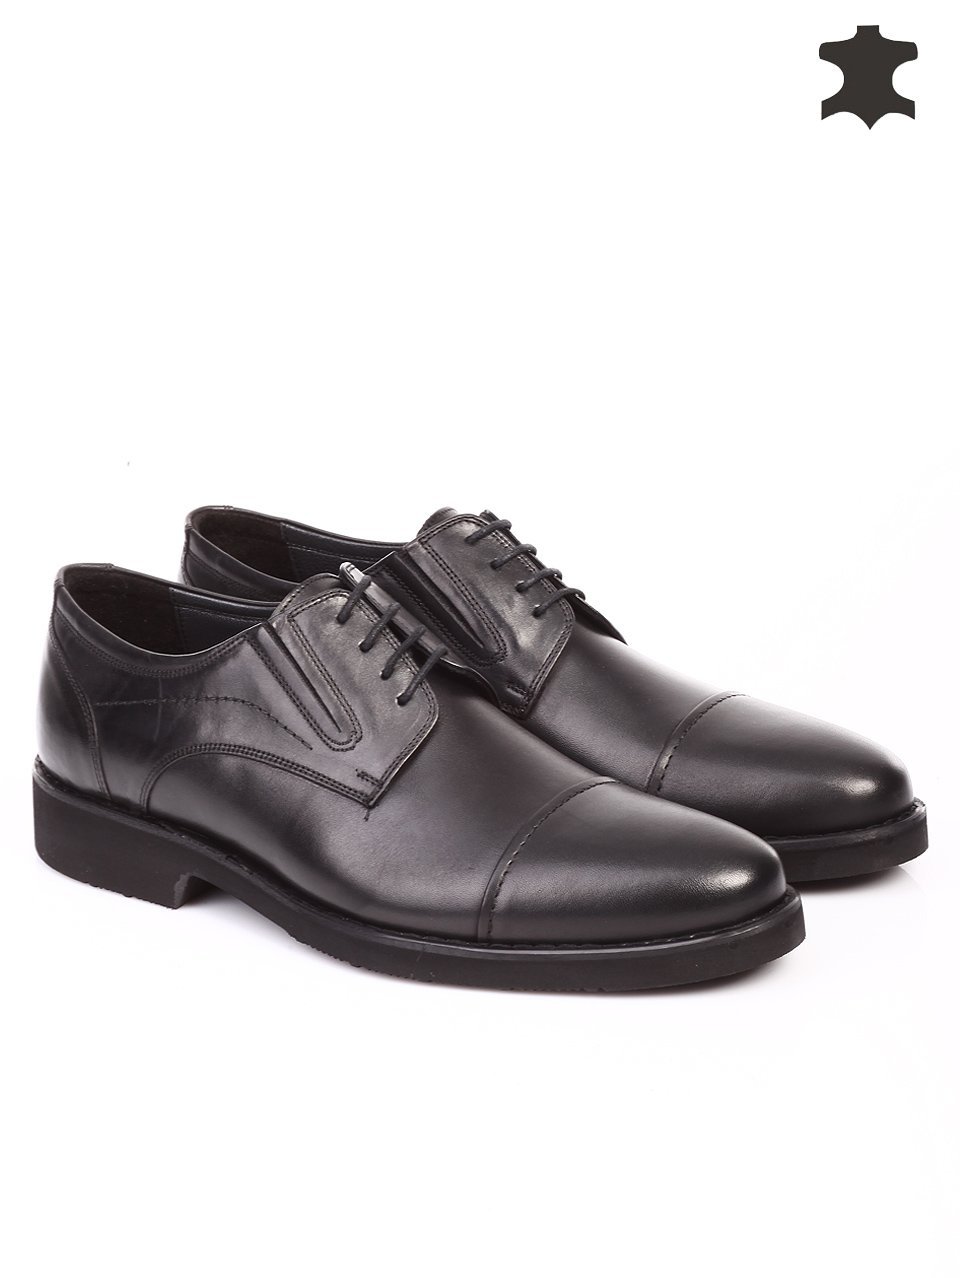 Елегантни мъжки обувки от естествена кожа 7AT-15830 black